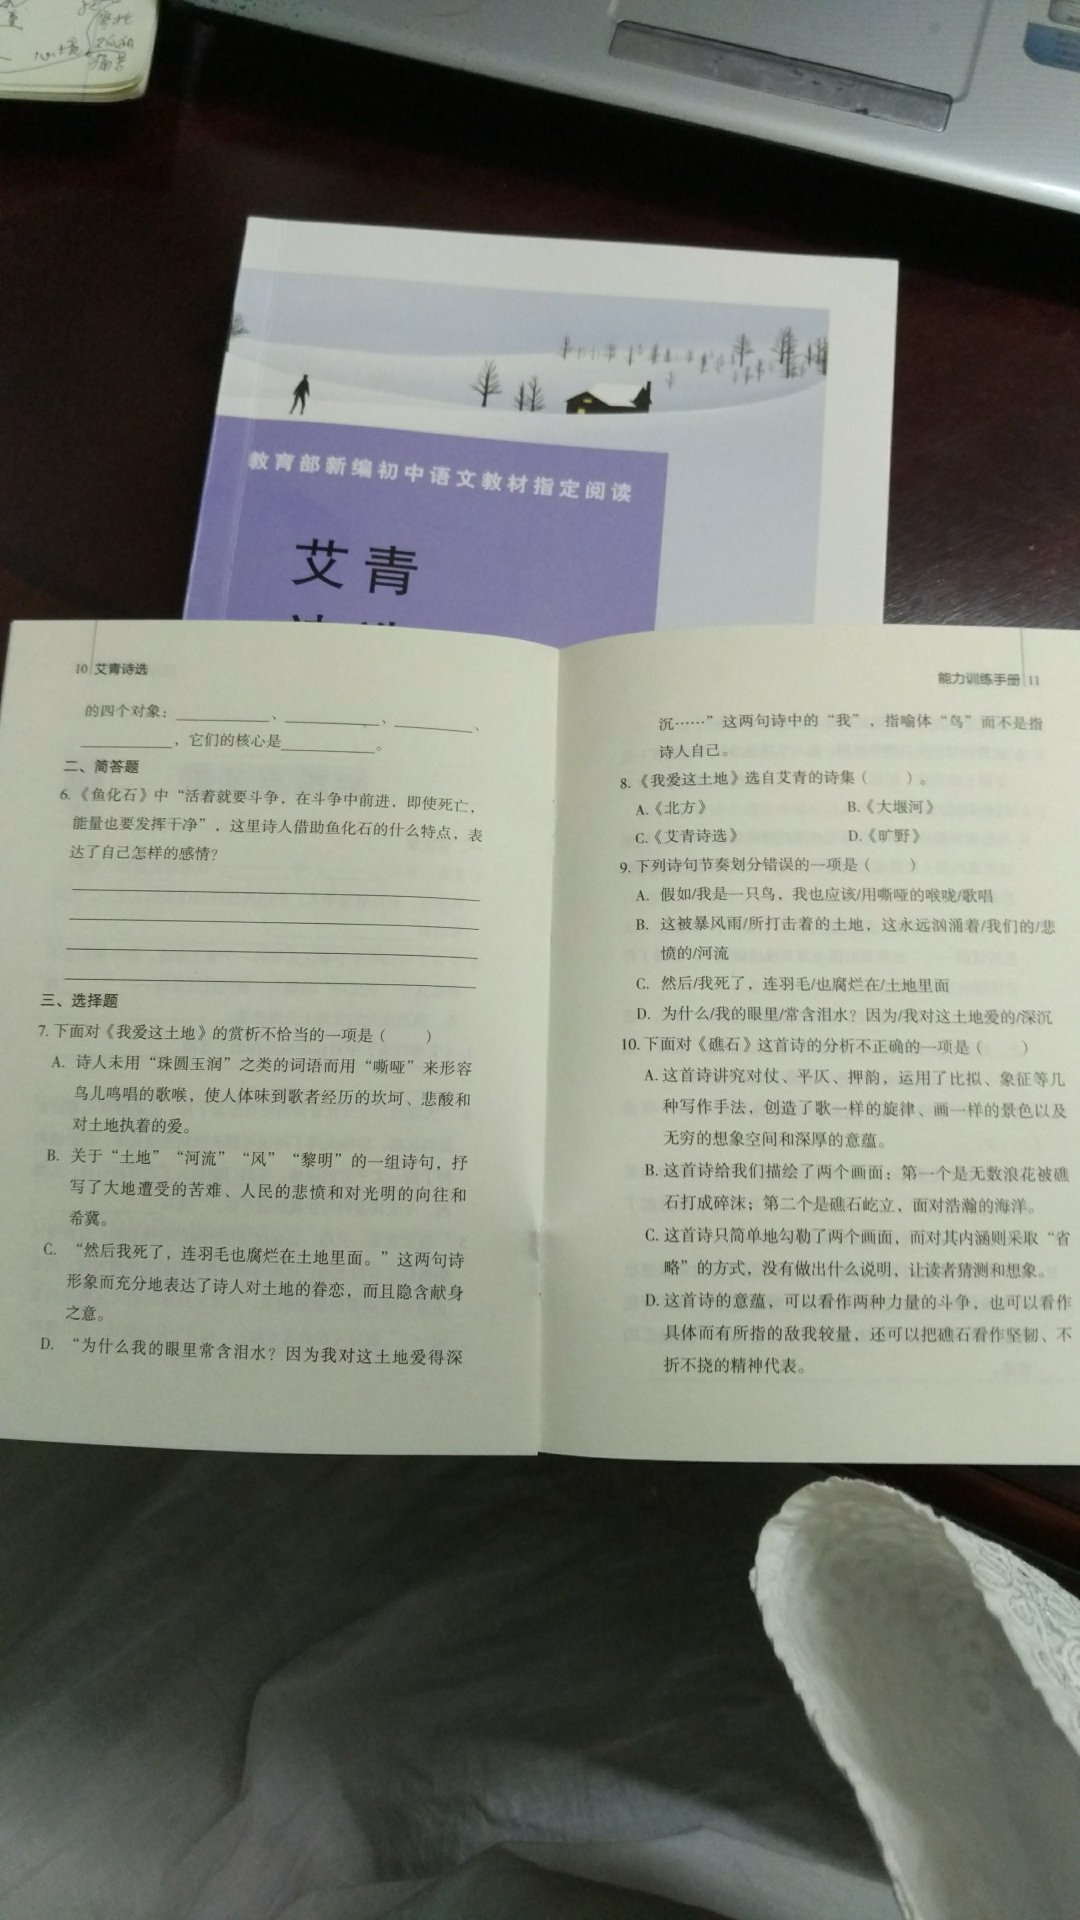 里面附有一本薄薄的小练习册，集中了很多首诗的阅读理解题目。